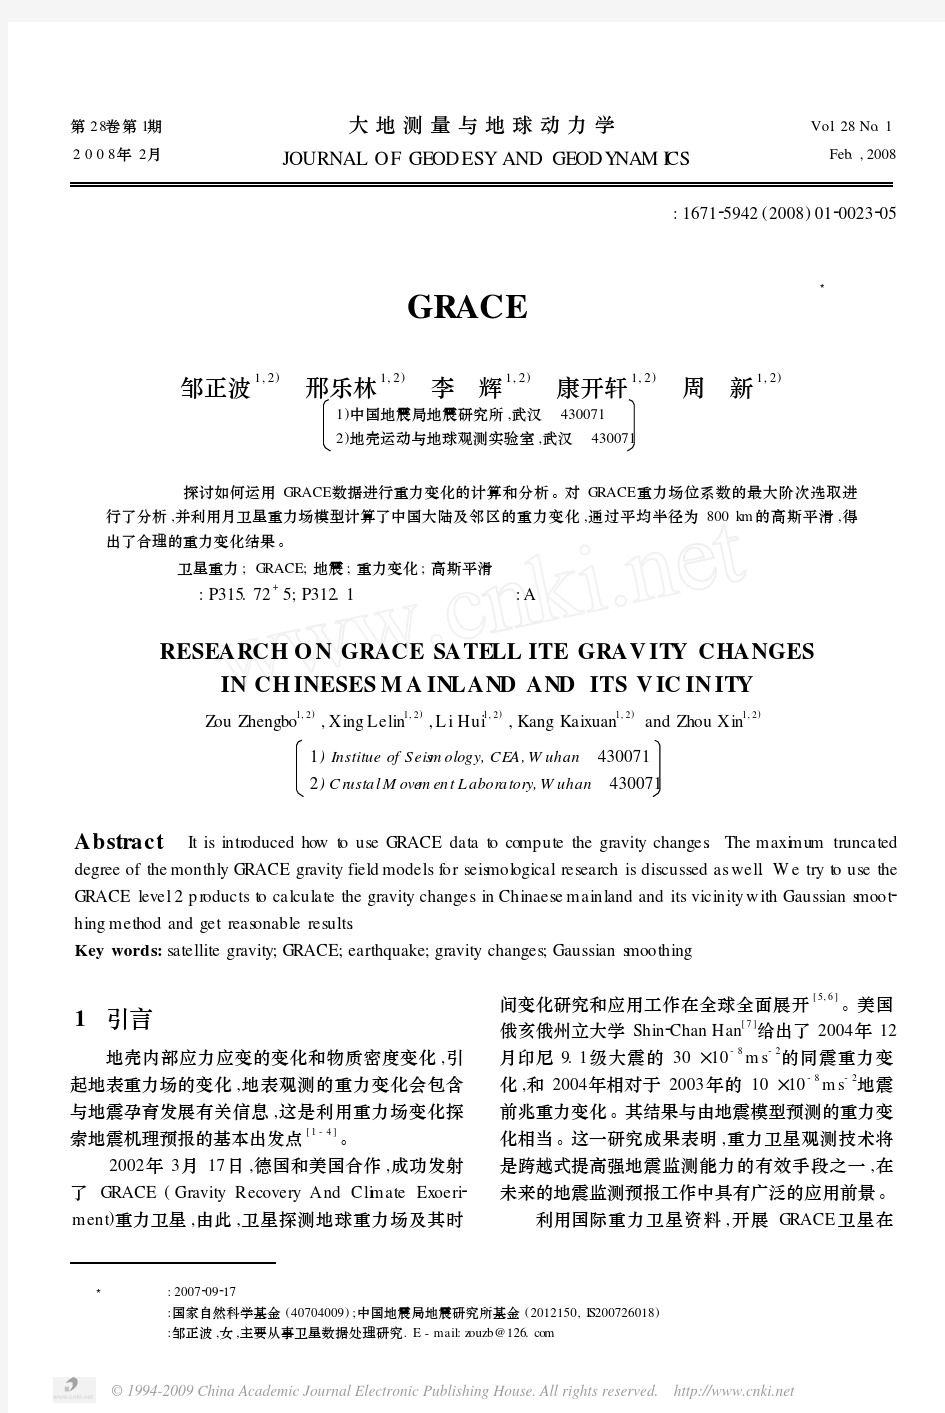 中国大陆及邻区GRACE卫星重力变化研究